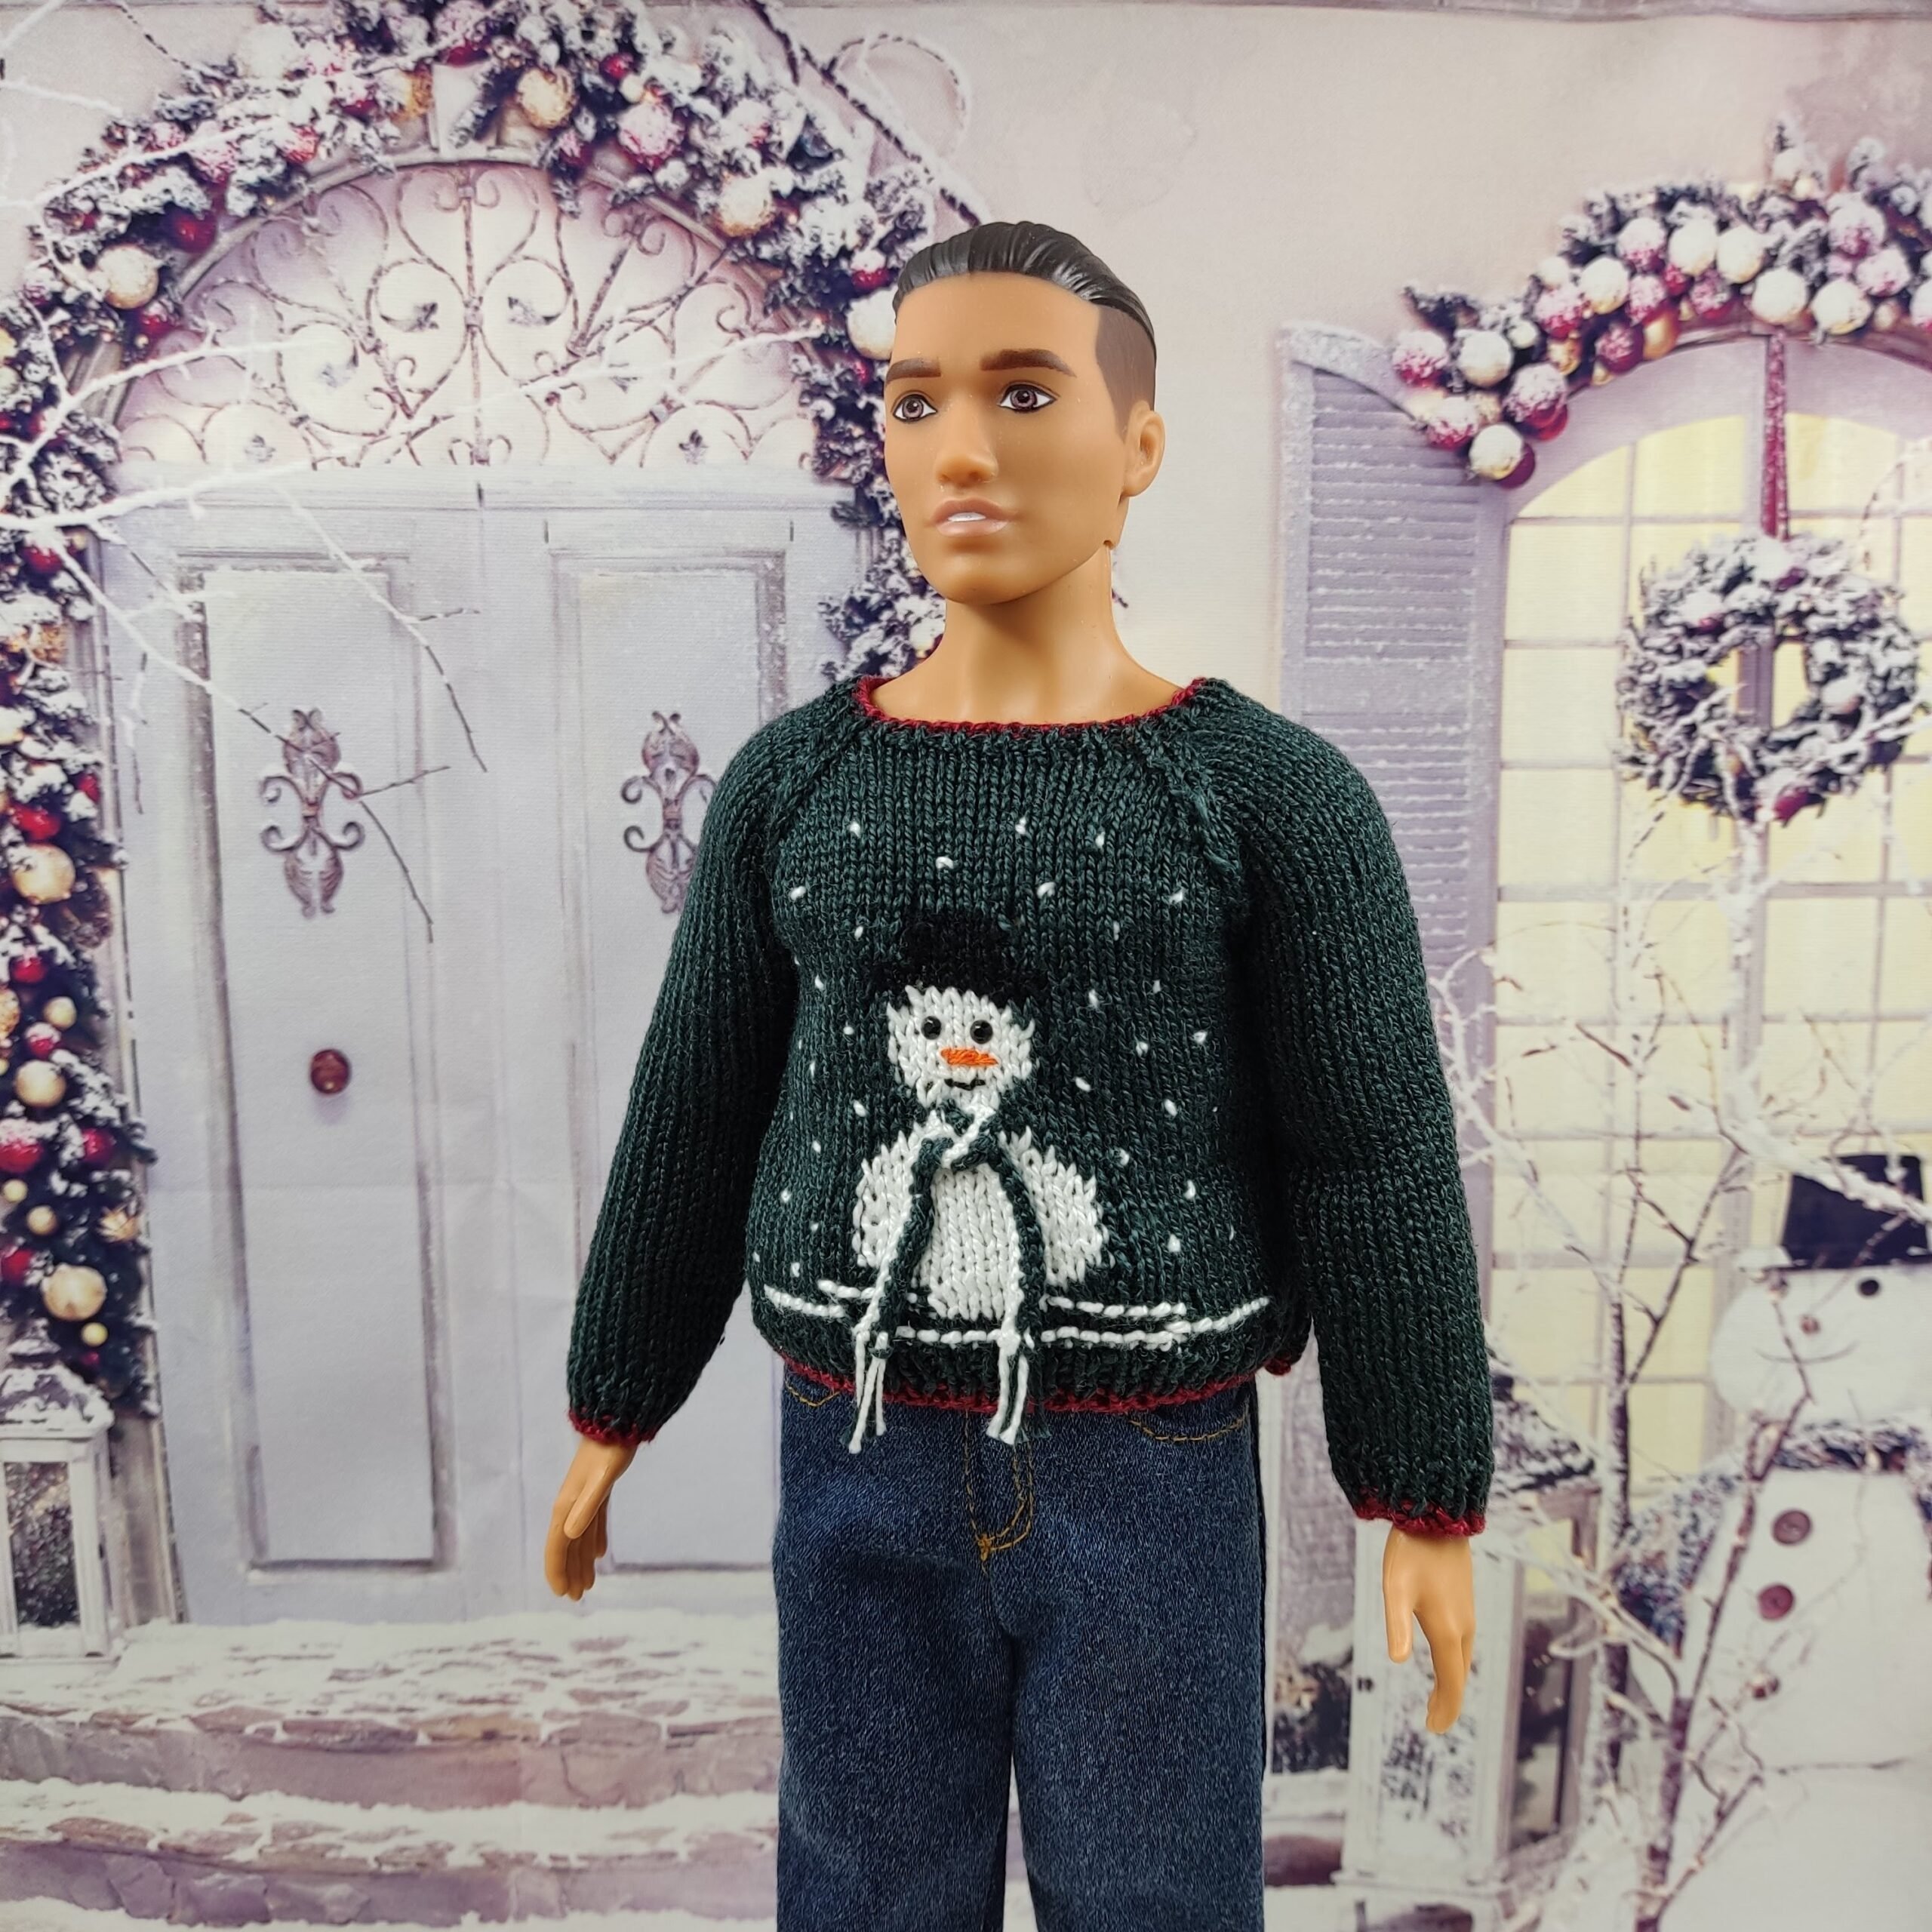 Ken doll clothes, Ken Christmas sweater